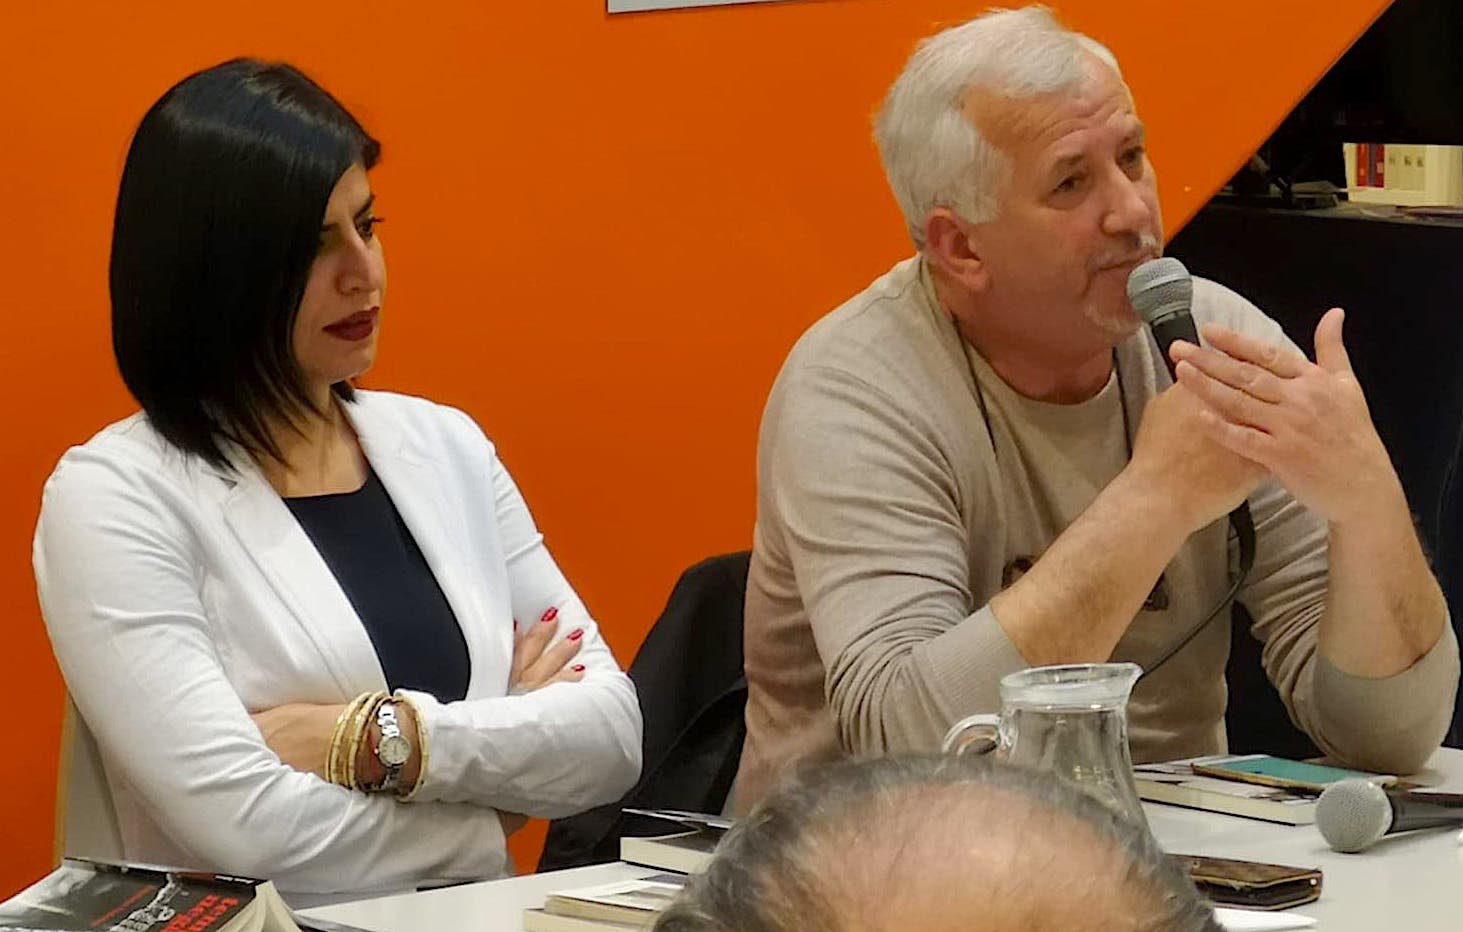 17 prill 2019 - Firence - Duke folë për Denata Ndrecën